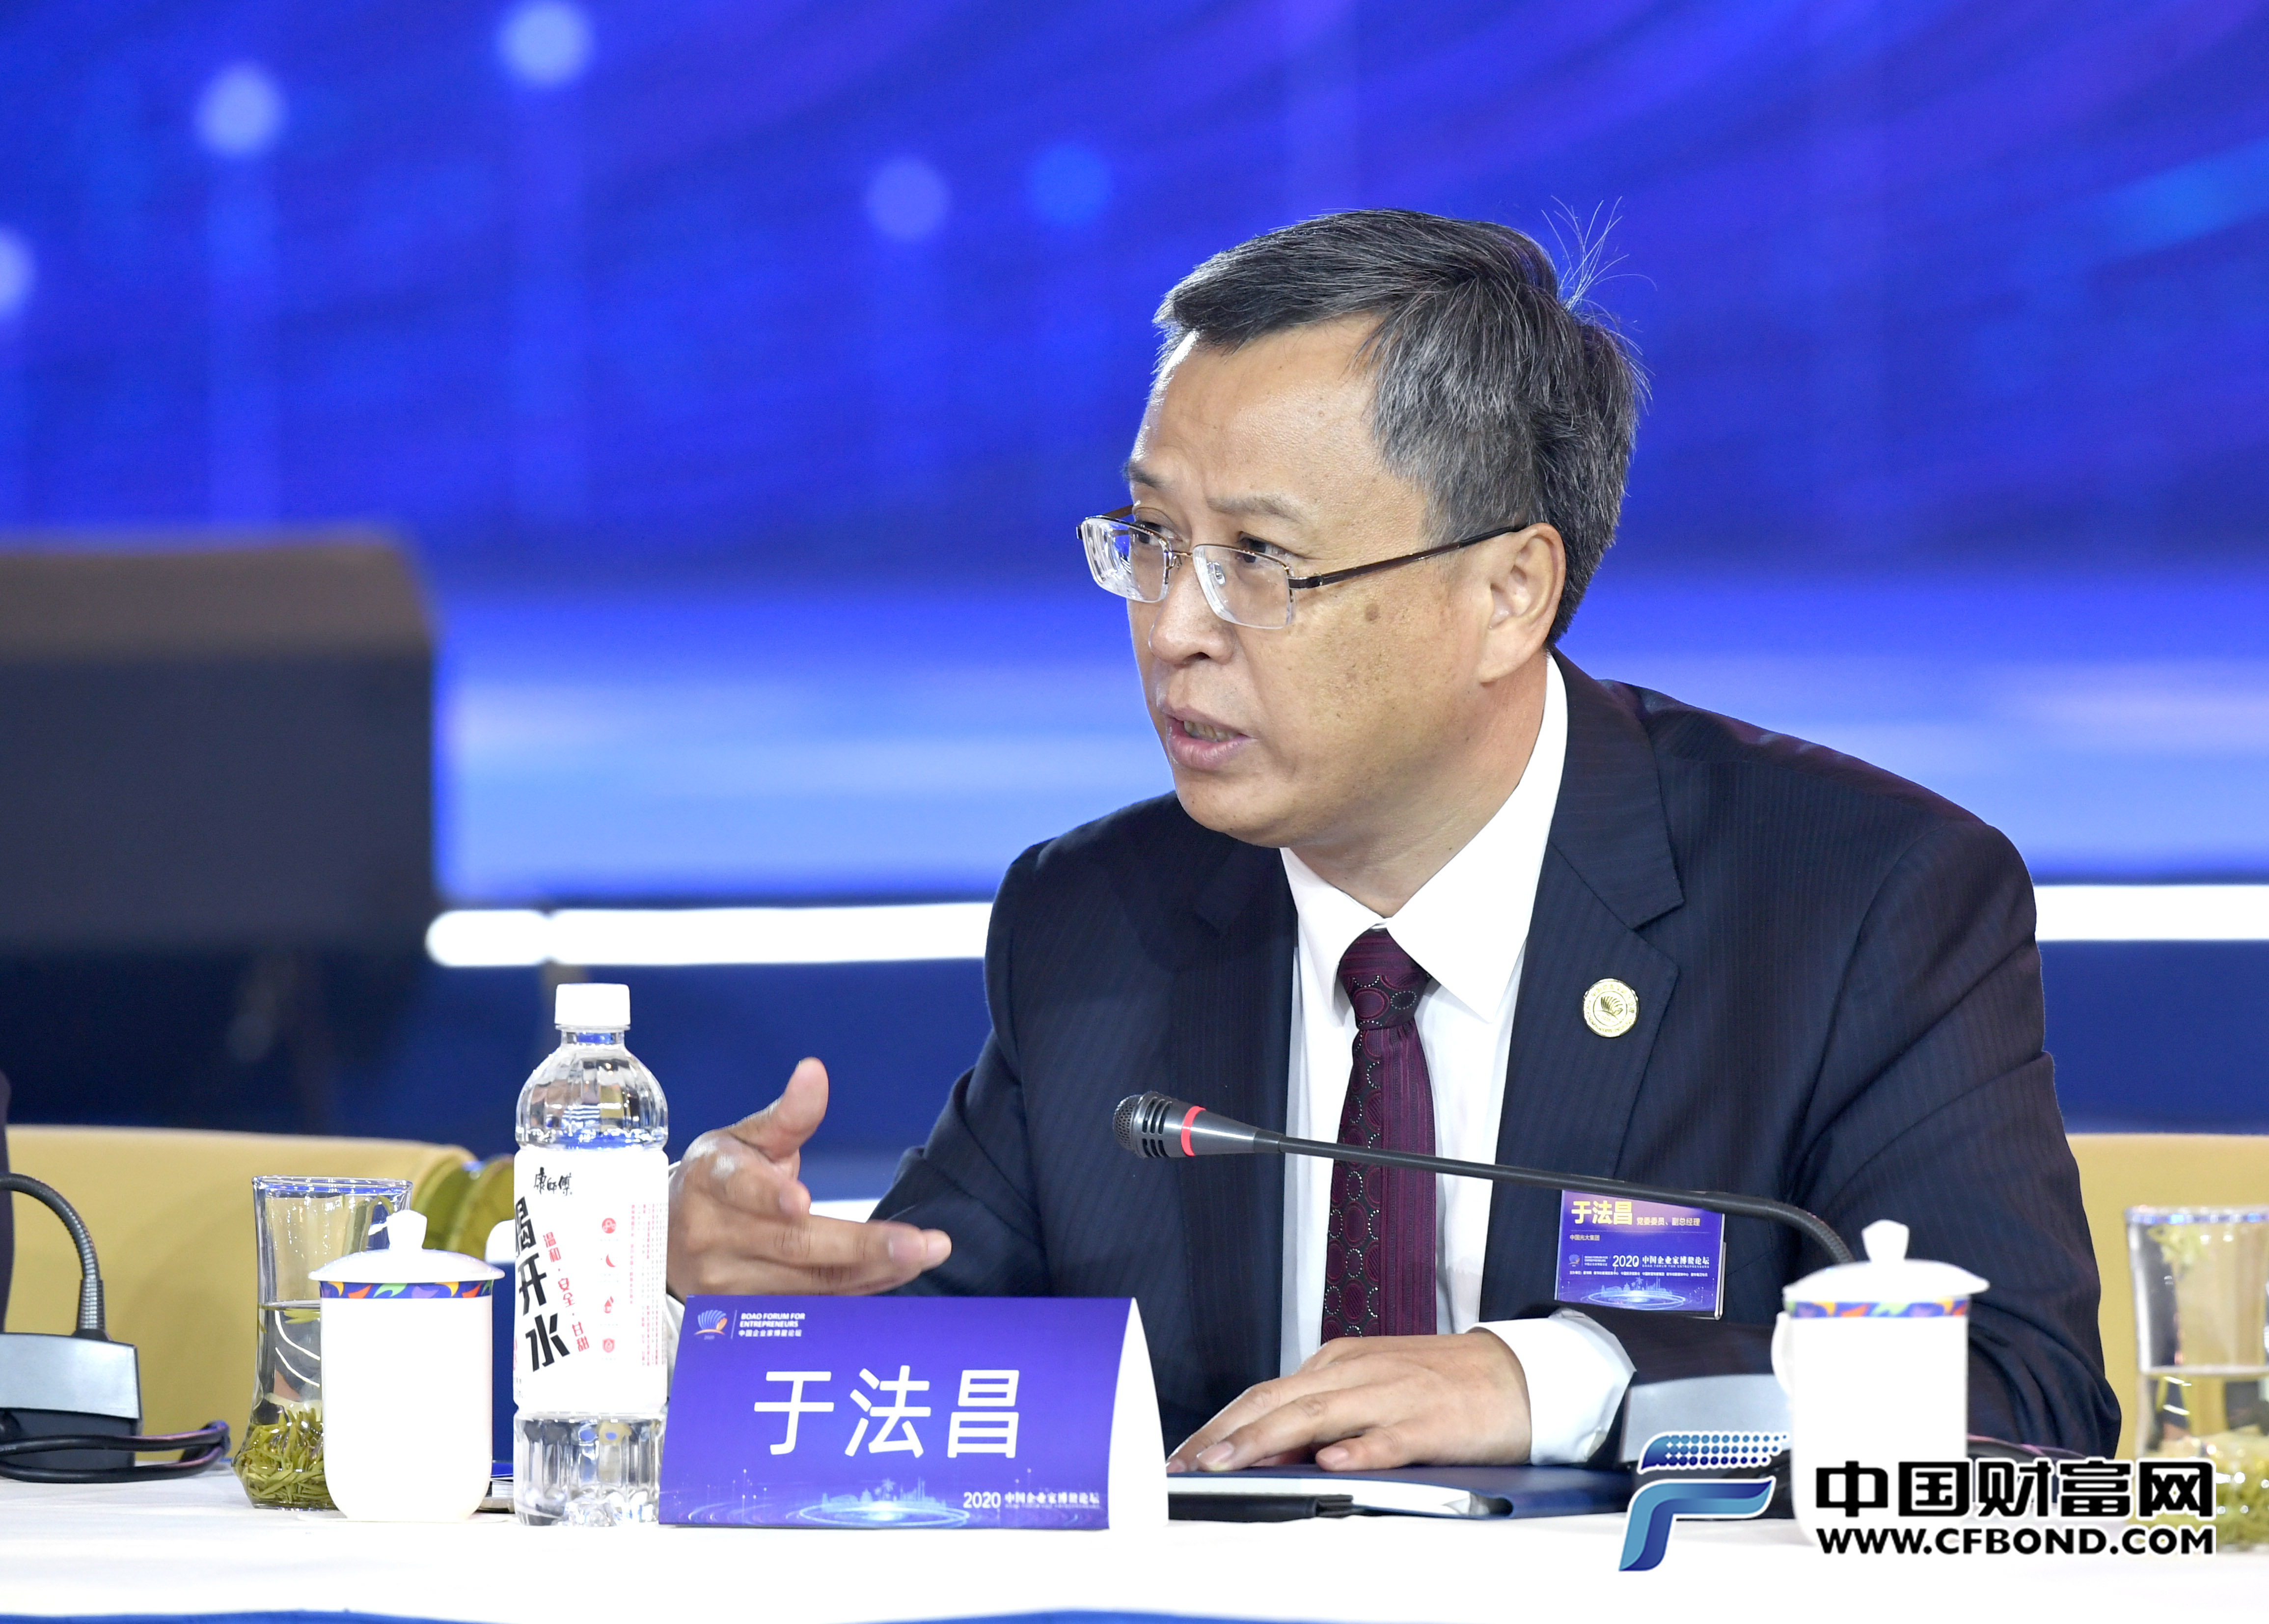 中国光大集团股份公司副总经理于法昌